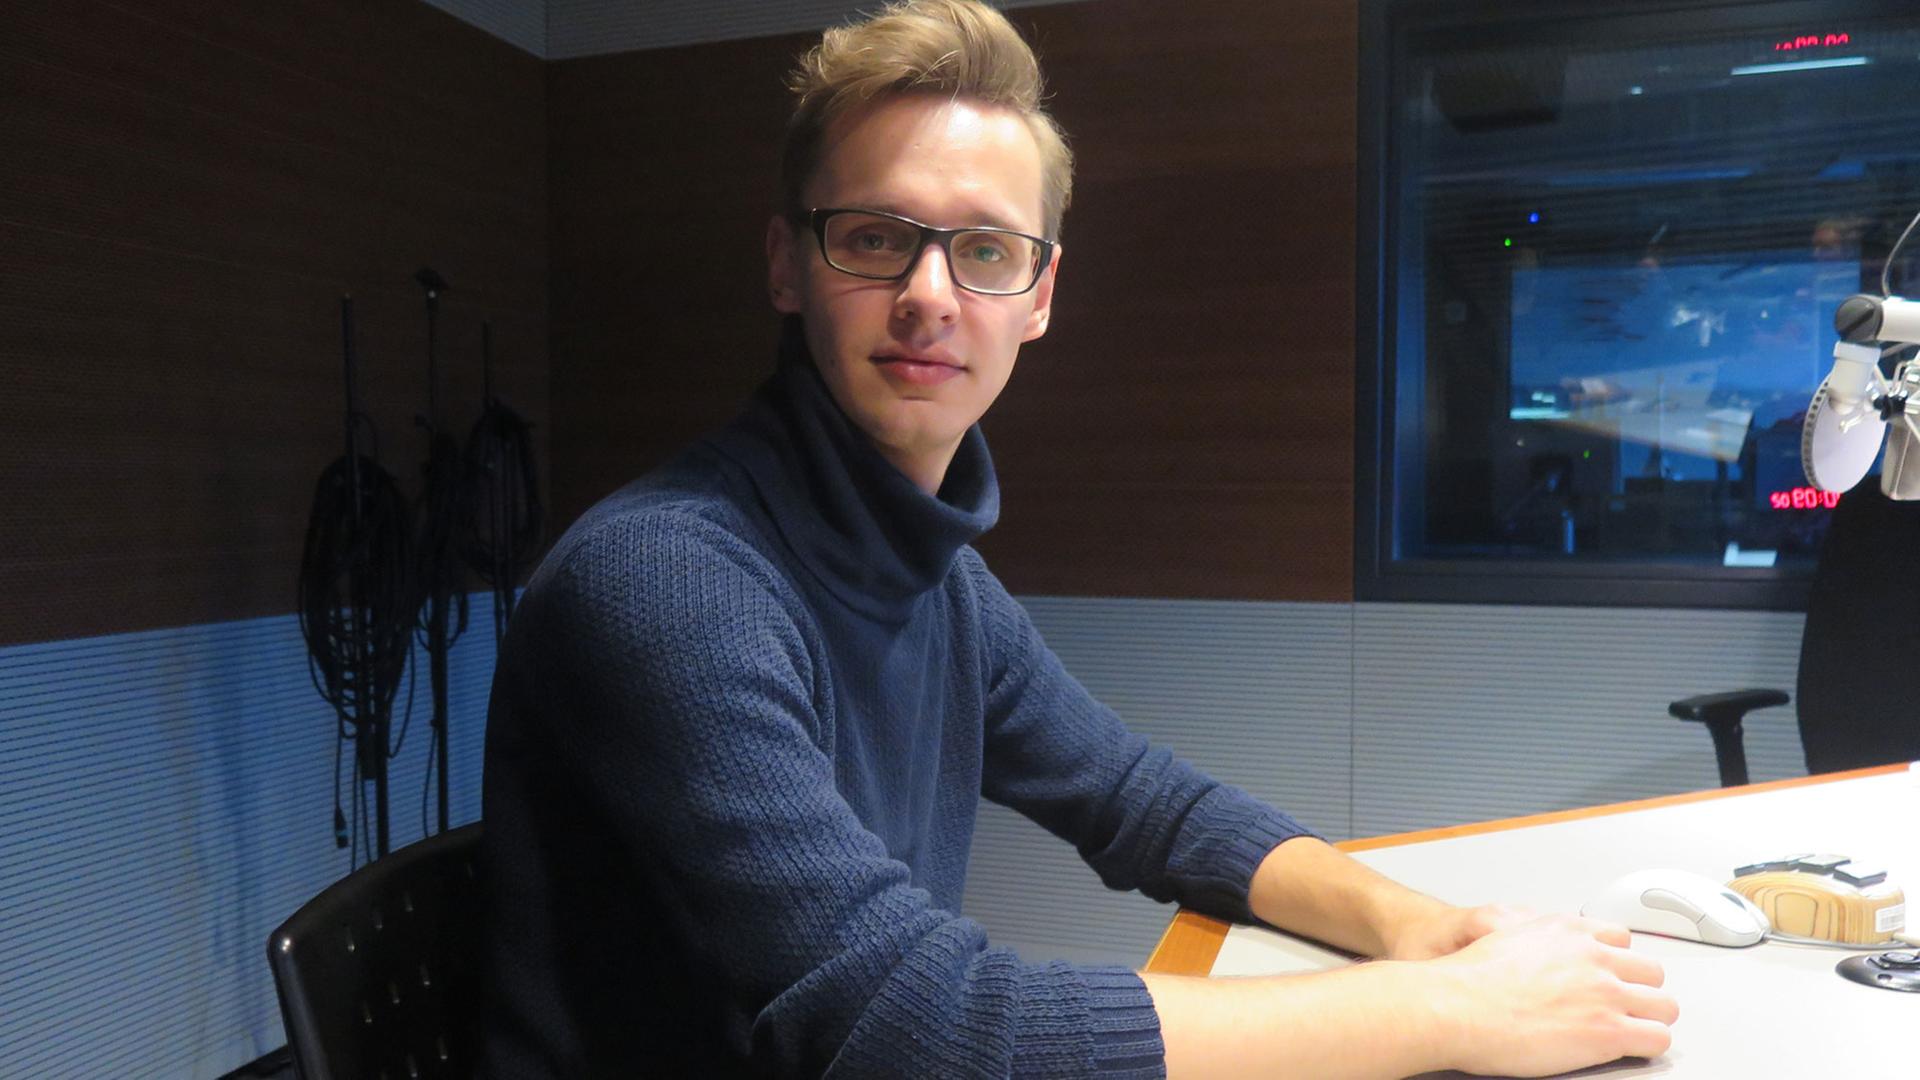 Philipp Bertram ist Gründer und Koordinator der Aktion "Freiwillige helfen", einer Flüchtlingshilfe in Wilmersdorf